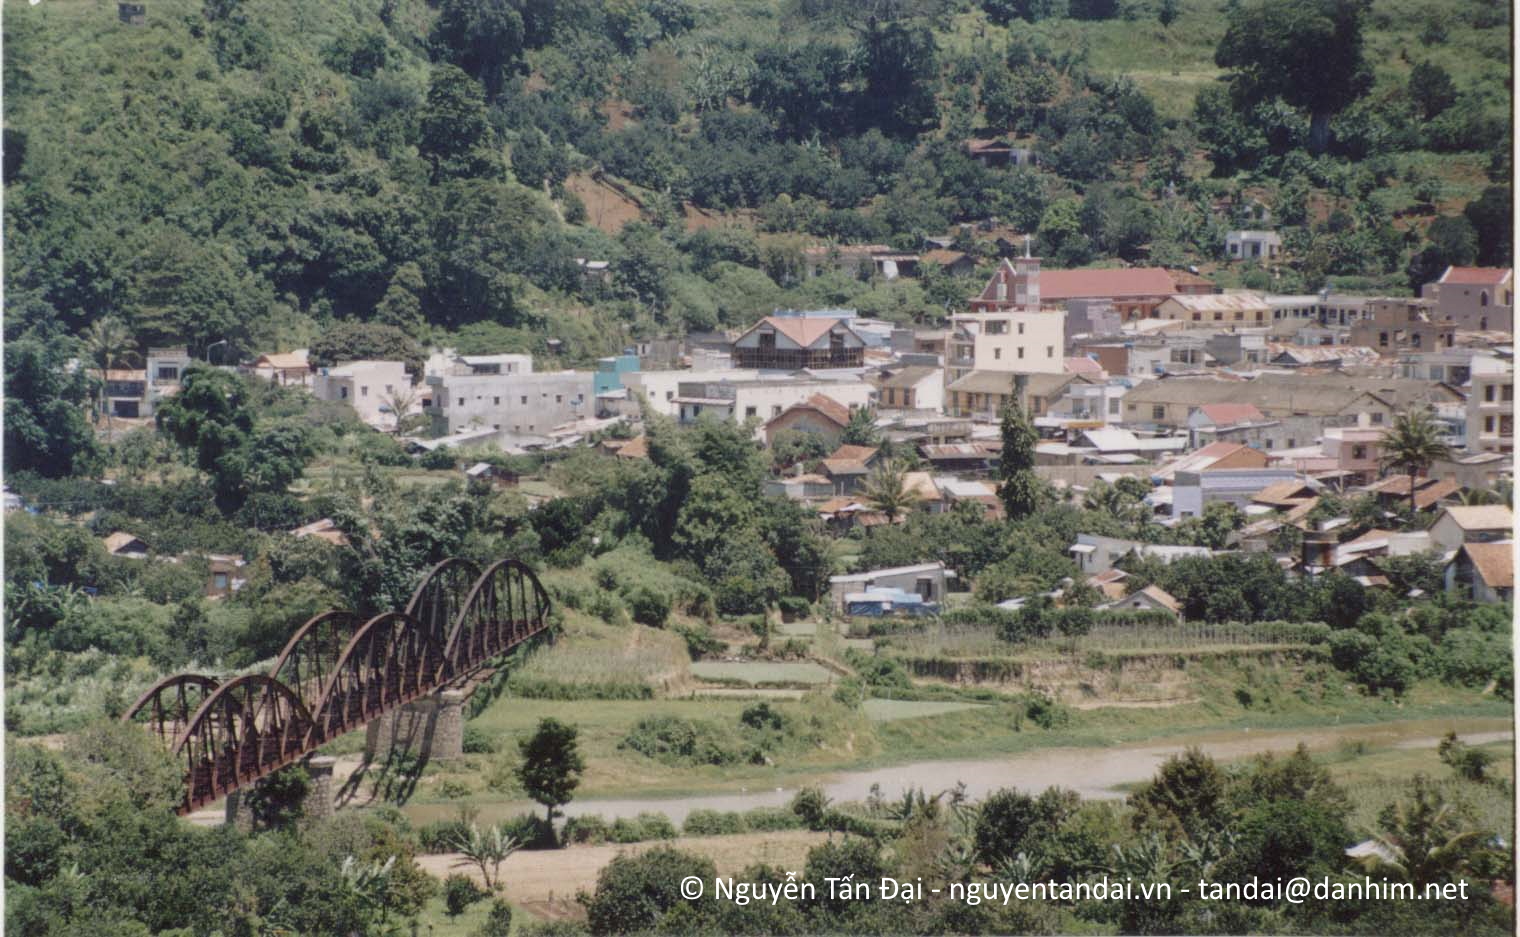 Cầu xe lửa Dran nhìn từ chùa Giác Nguyên.